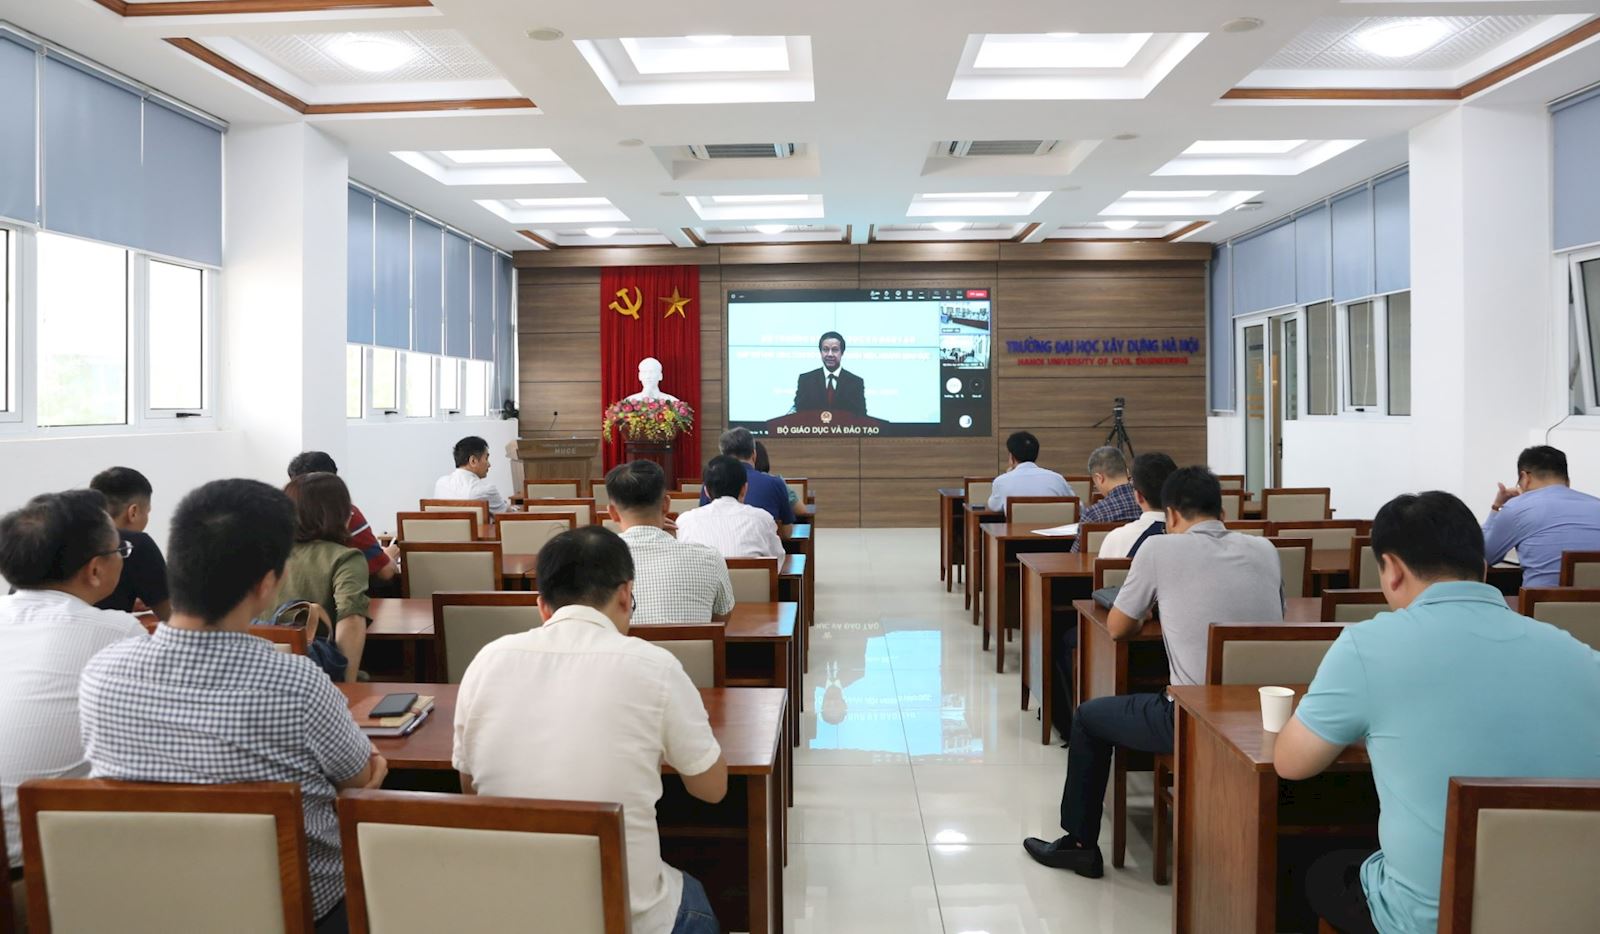 Trường Đại học Xây dựng Hà Nội tham dự chương trình "Bộ trưởng Bộ Giáo dục và Đào tạo gặp gỡ nhà giáo, cán bộ quản lý, nhân viên ngành Giáo dục".